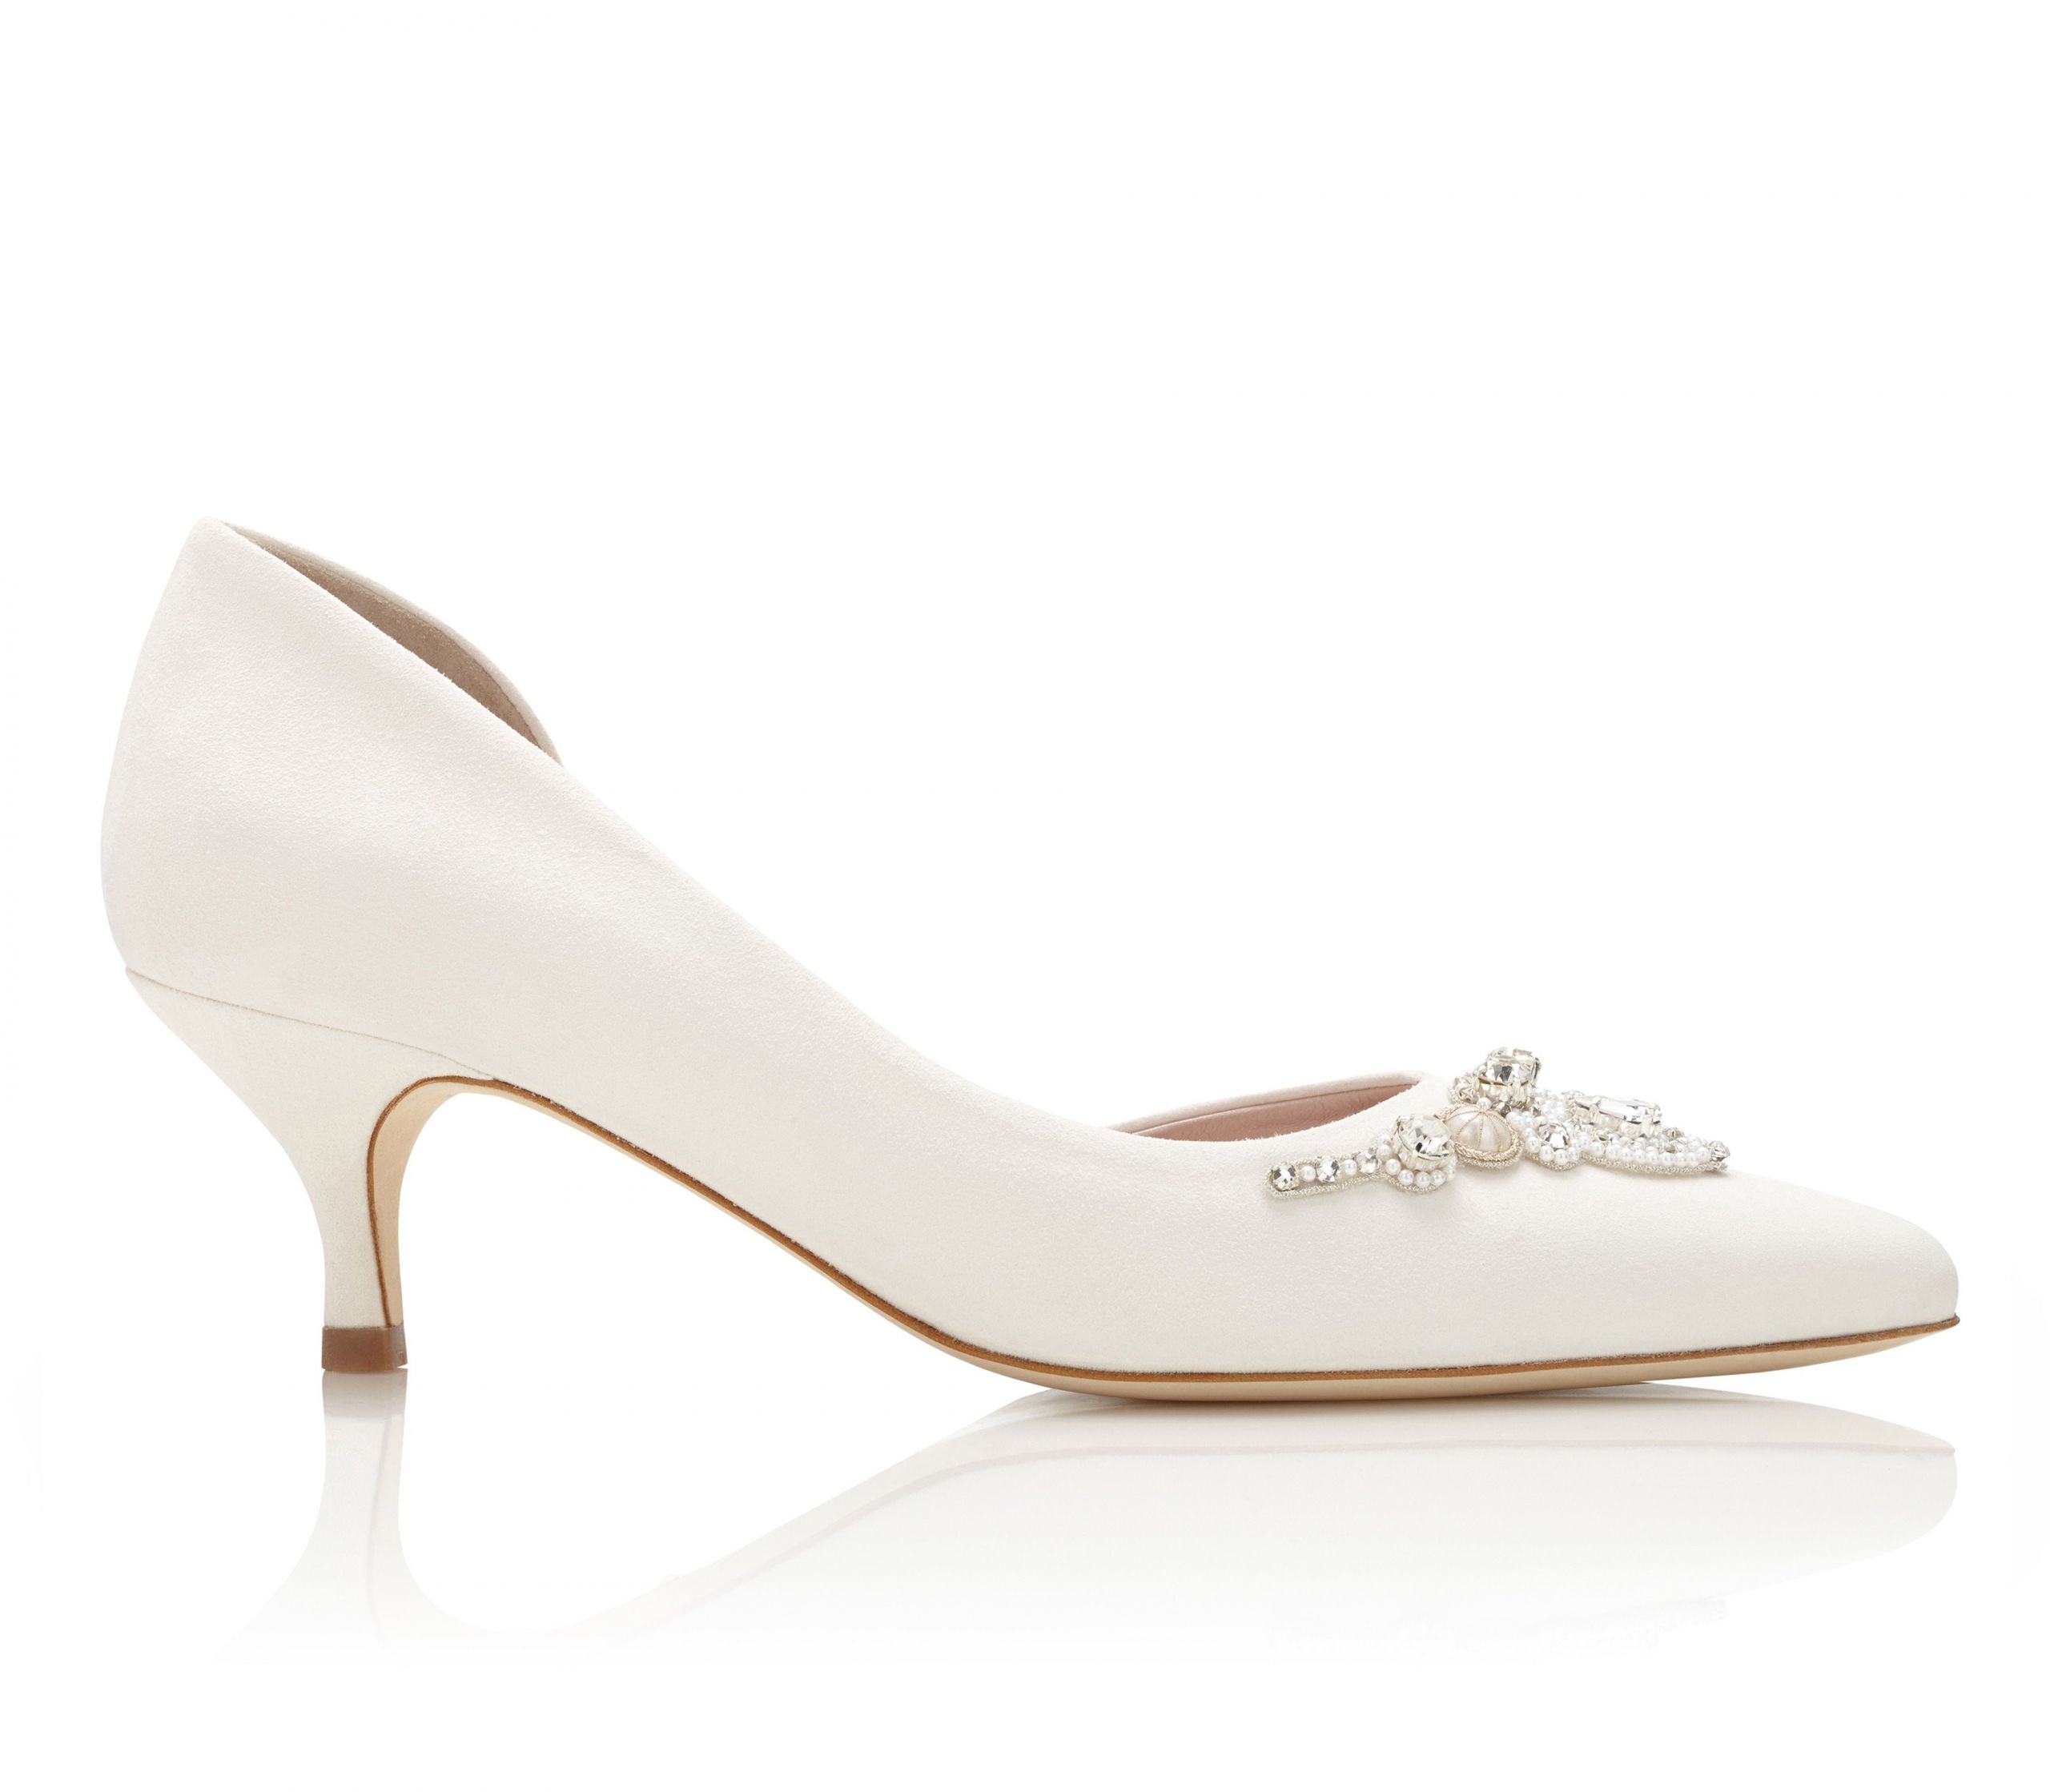 Ivory Kitten Heel Wedding Shoes
 Buy Amelia Kitten Ivory Low Heel Wedding Shoe